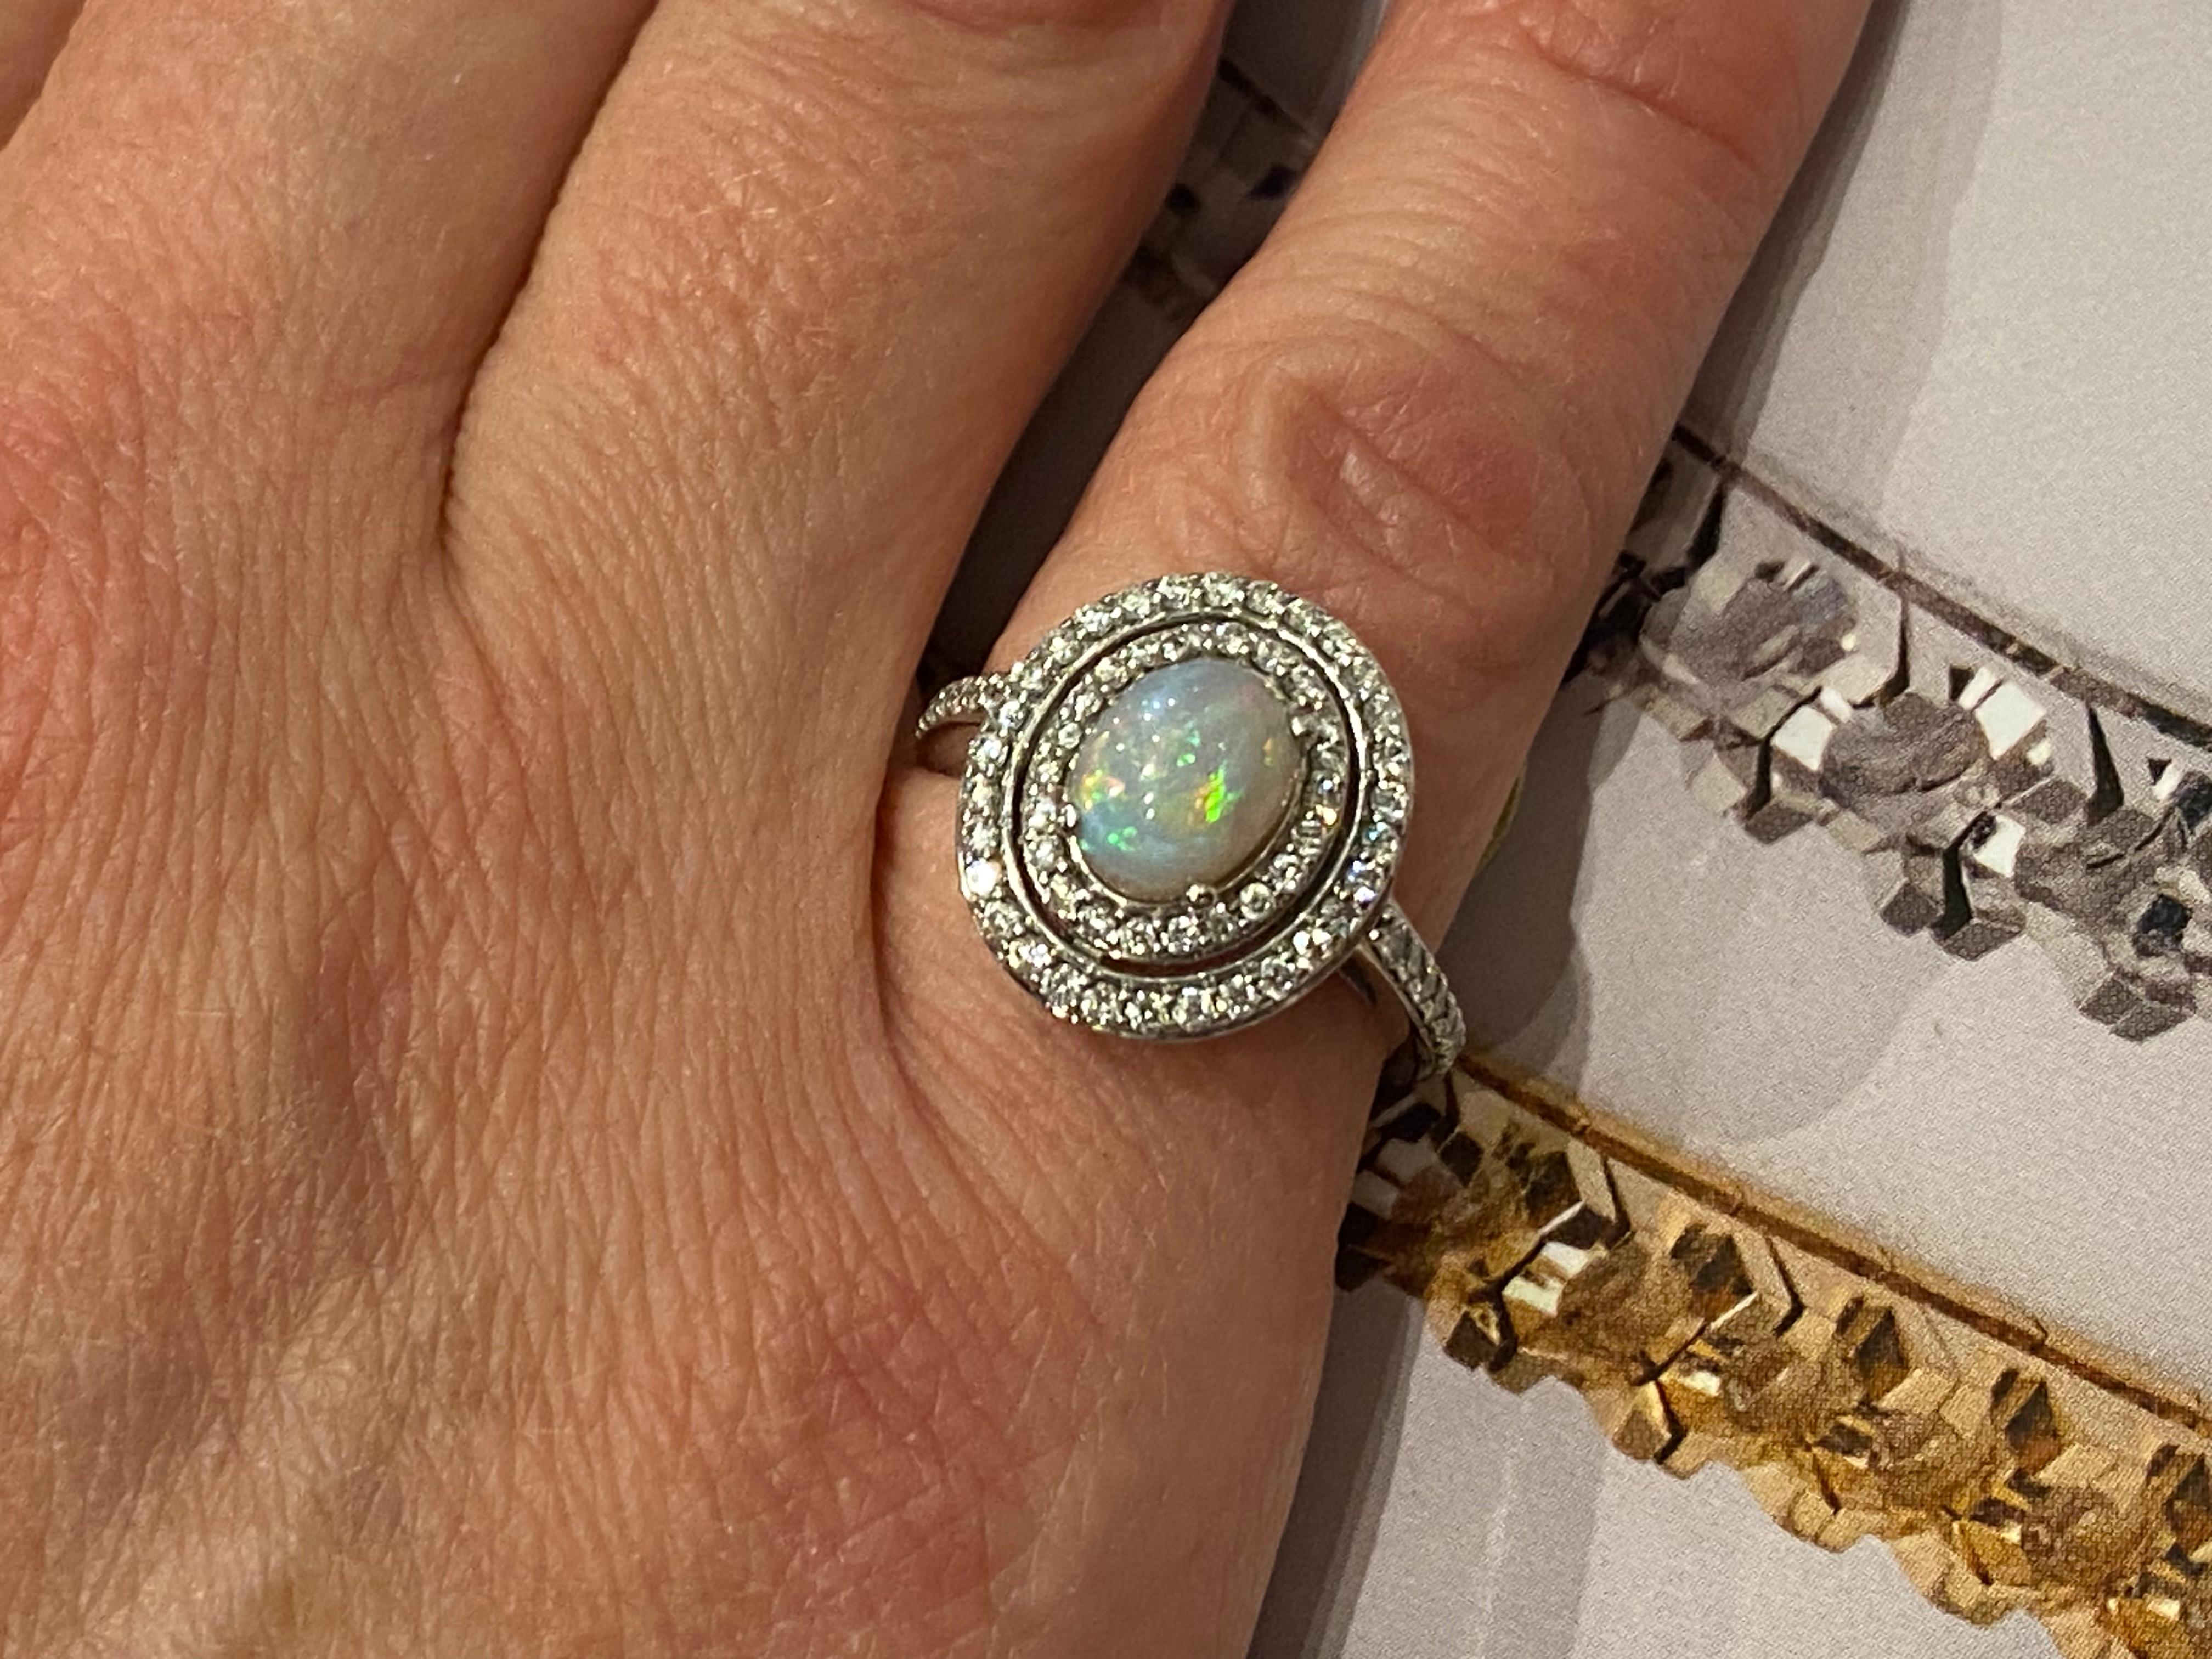 Magnifique double halo, 
Cette bague vintage présente les caractéristiques suivantes 
une opale australienne massive 
de taille cabochon, 
de forme ovale
mesurant 9mm x 7mm - environ 1.50ct 
de la coupole haute, 
affichant la plus belle myriade de